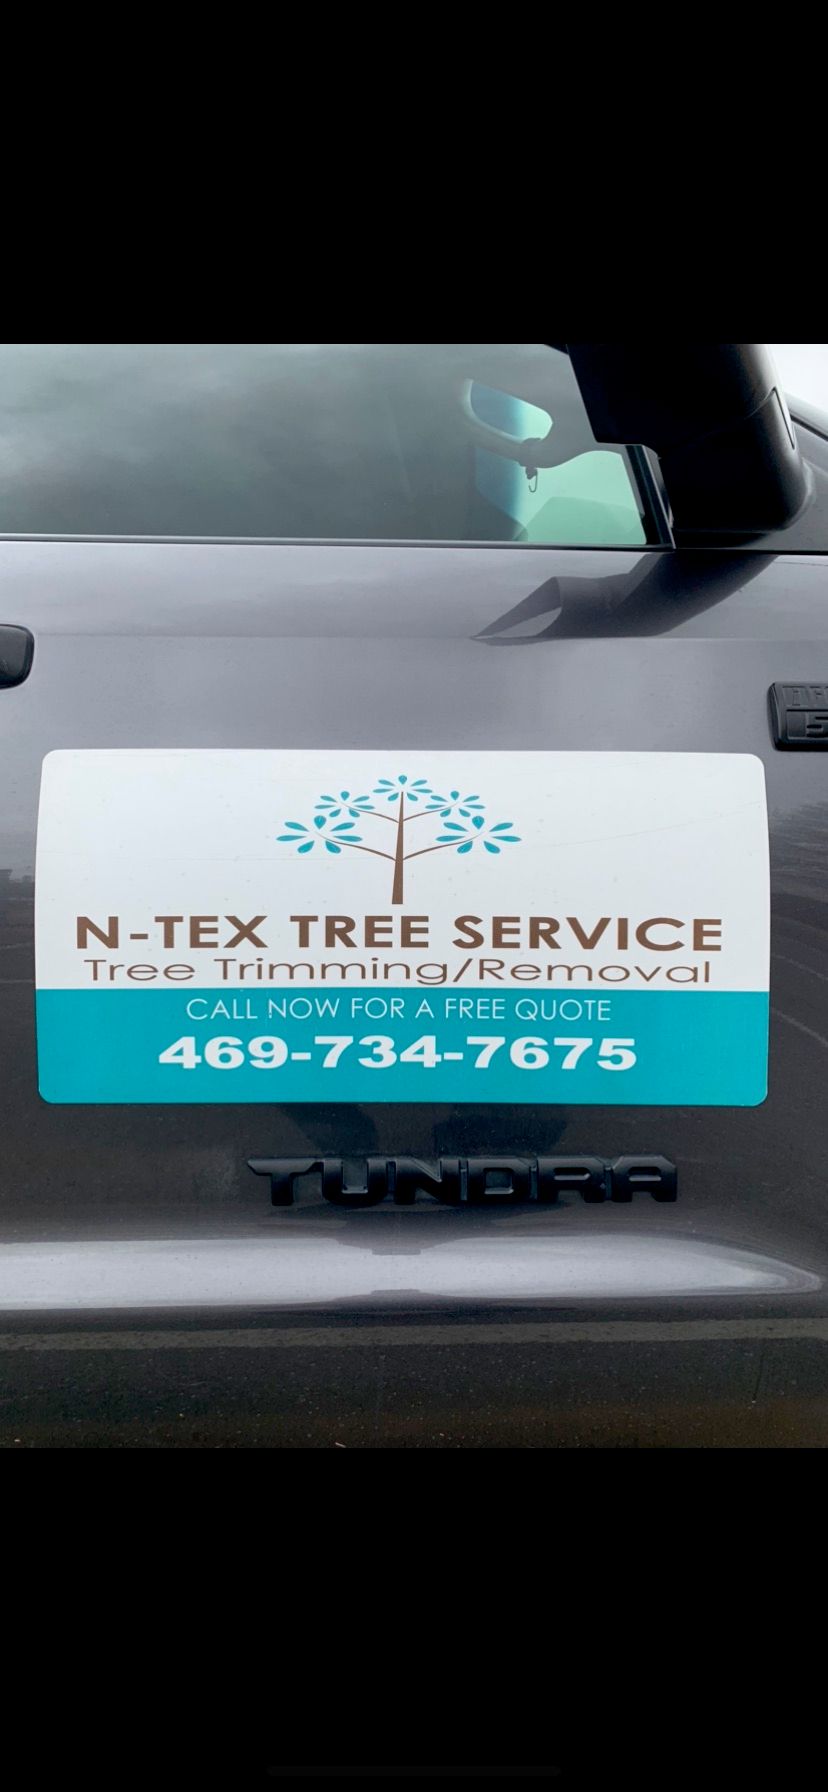 N-Tex Tree Service